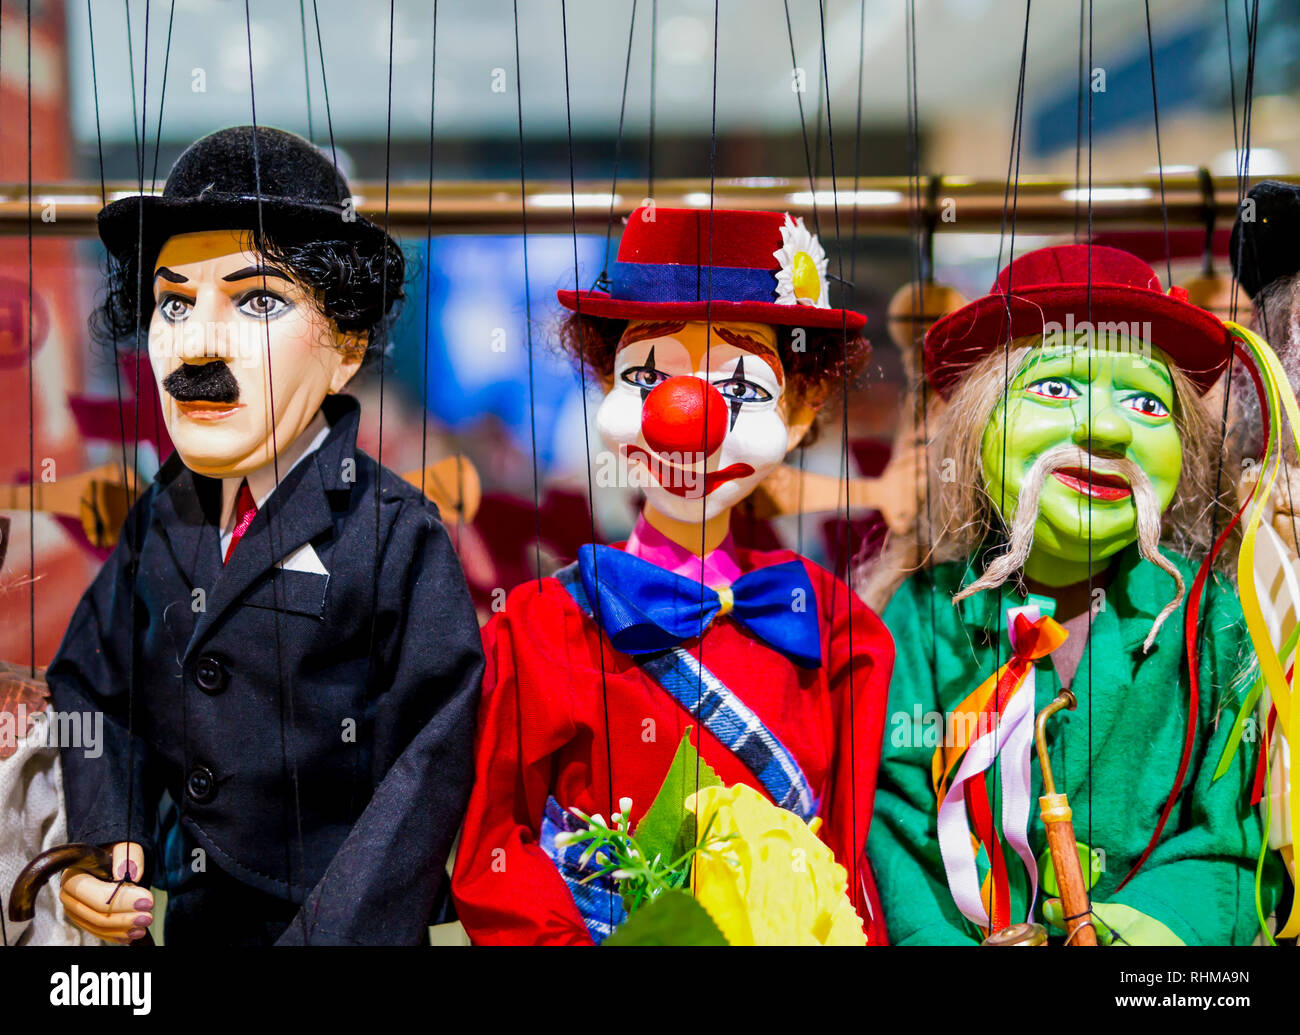 Zeile der traditionellen Puppen - Gentleman, Clown und Musiker Stockfoto